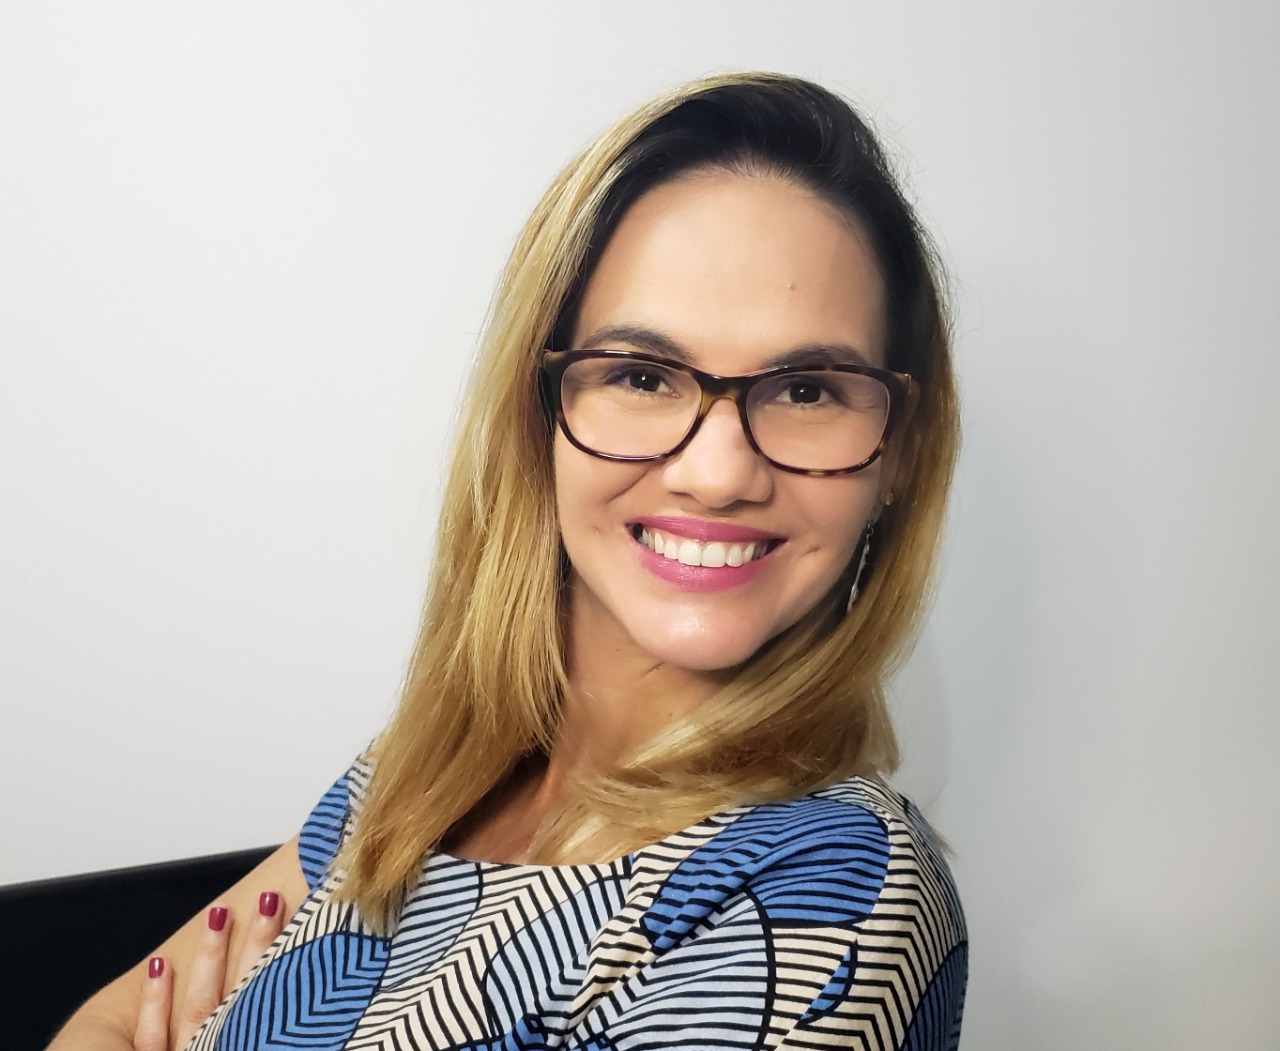 Fabiana Souza - Graduada em Ciência da Computação na Universidade Católica de Pernambuco. Mestranda em Engenharia da Computação na POLI/UPE. Atualmente é servidora da Agência de Regulação de Pernambuco (ARPE), na qual atua como Analista de Regulação na Coordenadoria de Tarifas e Estudos Econômico-Financeiros, vinculada à Diretoria de Regulação Econômico-Financeira